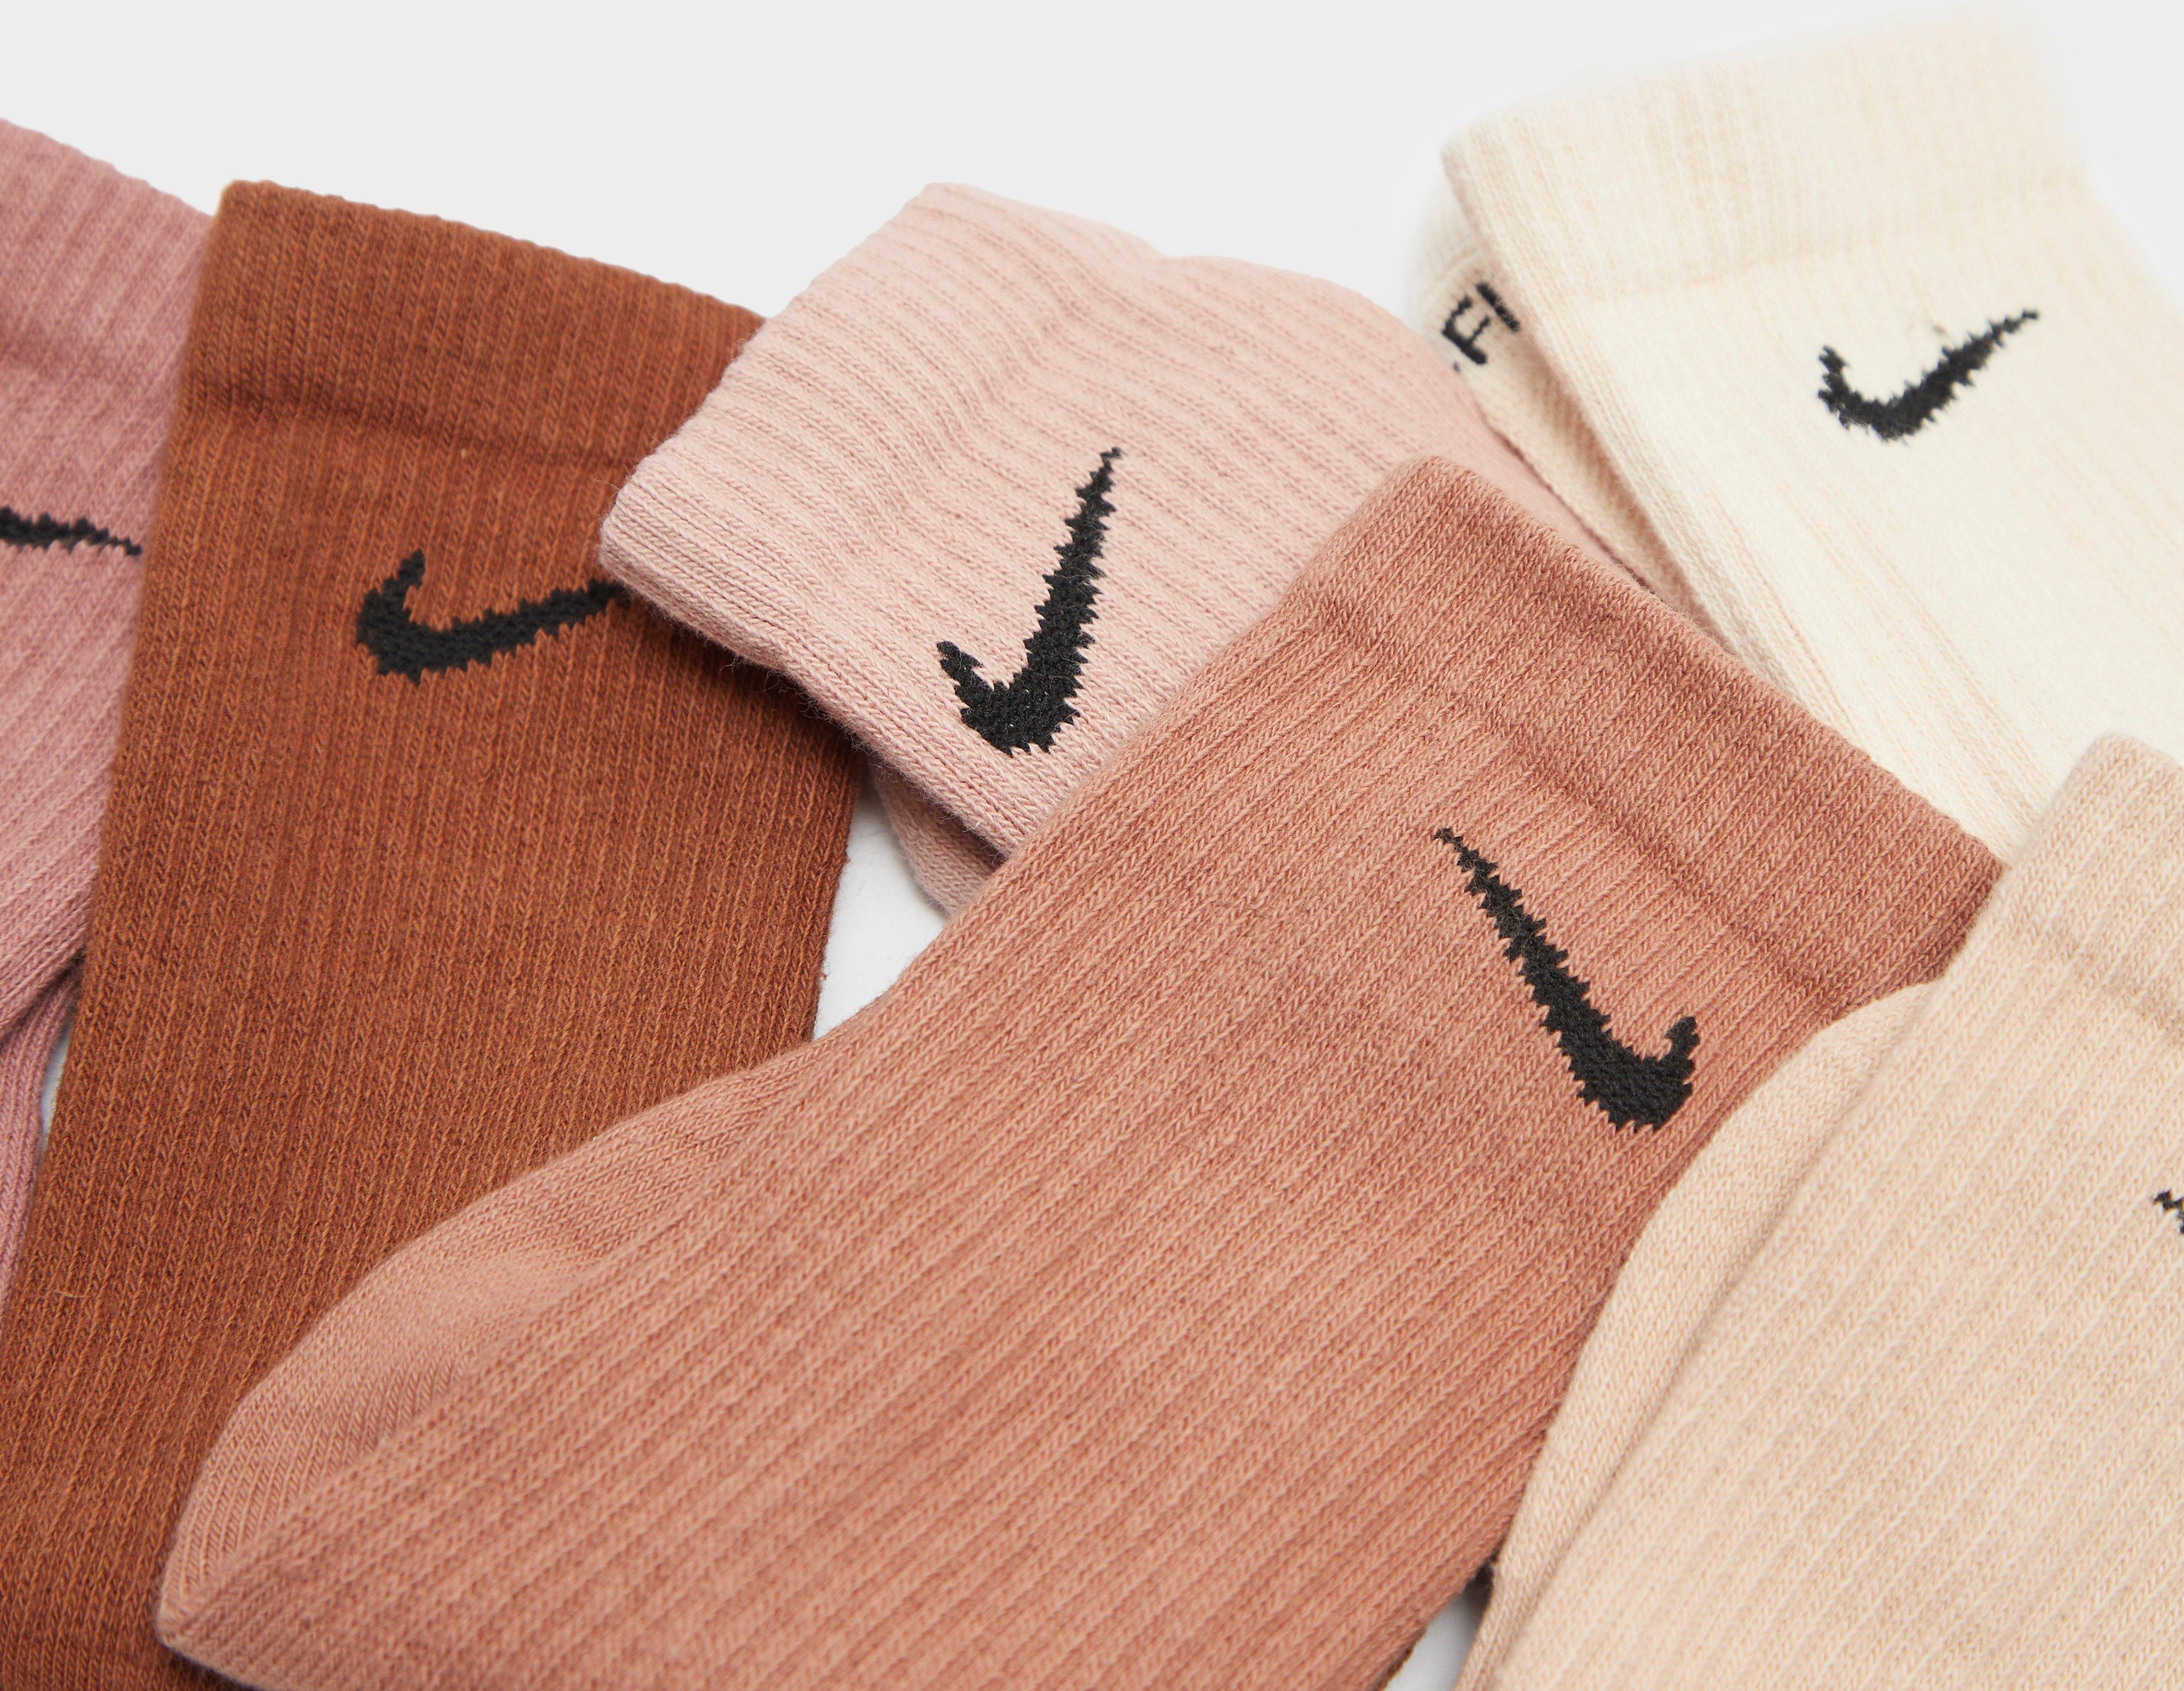 Les chaussettes coussinées logo Everyday Plus Ensemble de 6, Nike, Magasinez des Chaussettes pour Femme en ligne